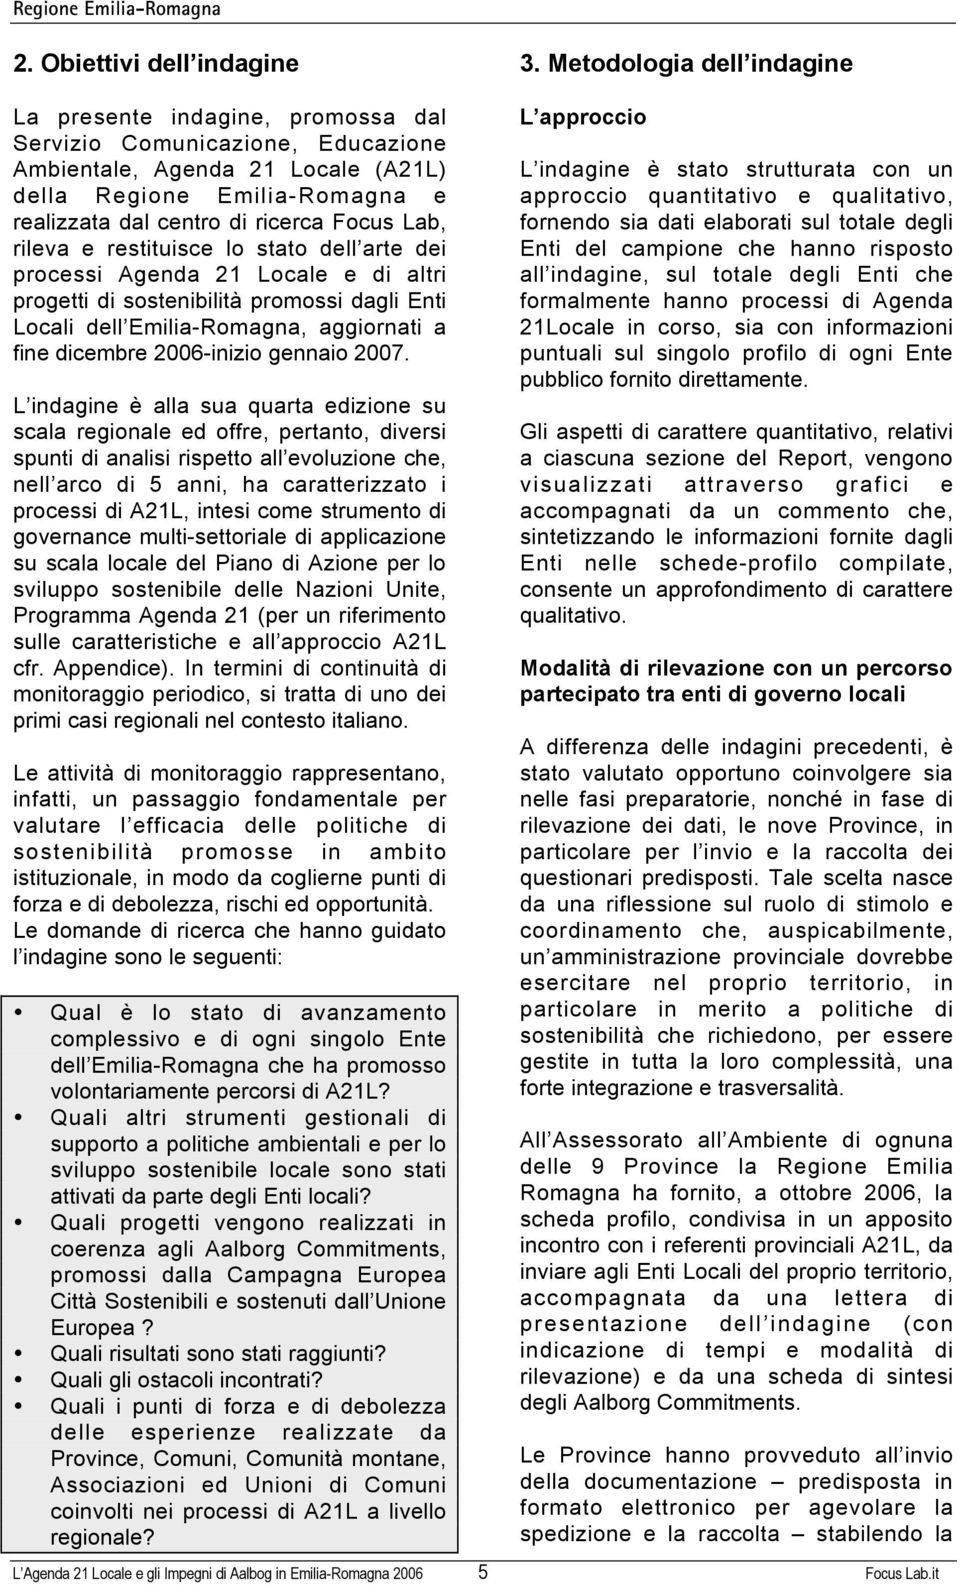 lo stato dell arte de process Agenda 21 Locale e d altr progett d sostenbltà promoss dagl Ent Local dell Emla-Romagna, aggornat a fne dcembre 2006-nzo gennao 2007.